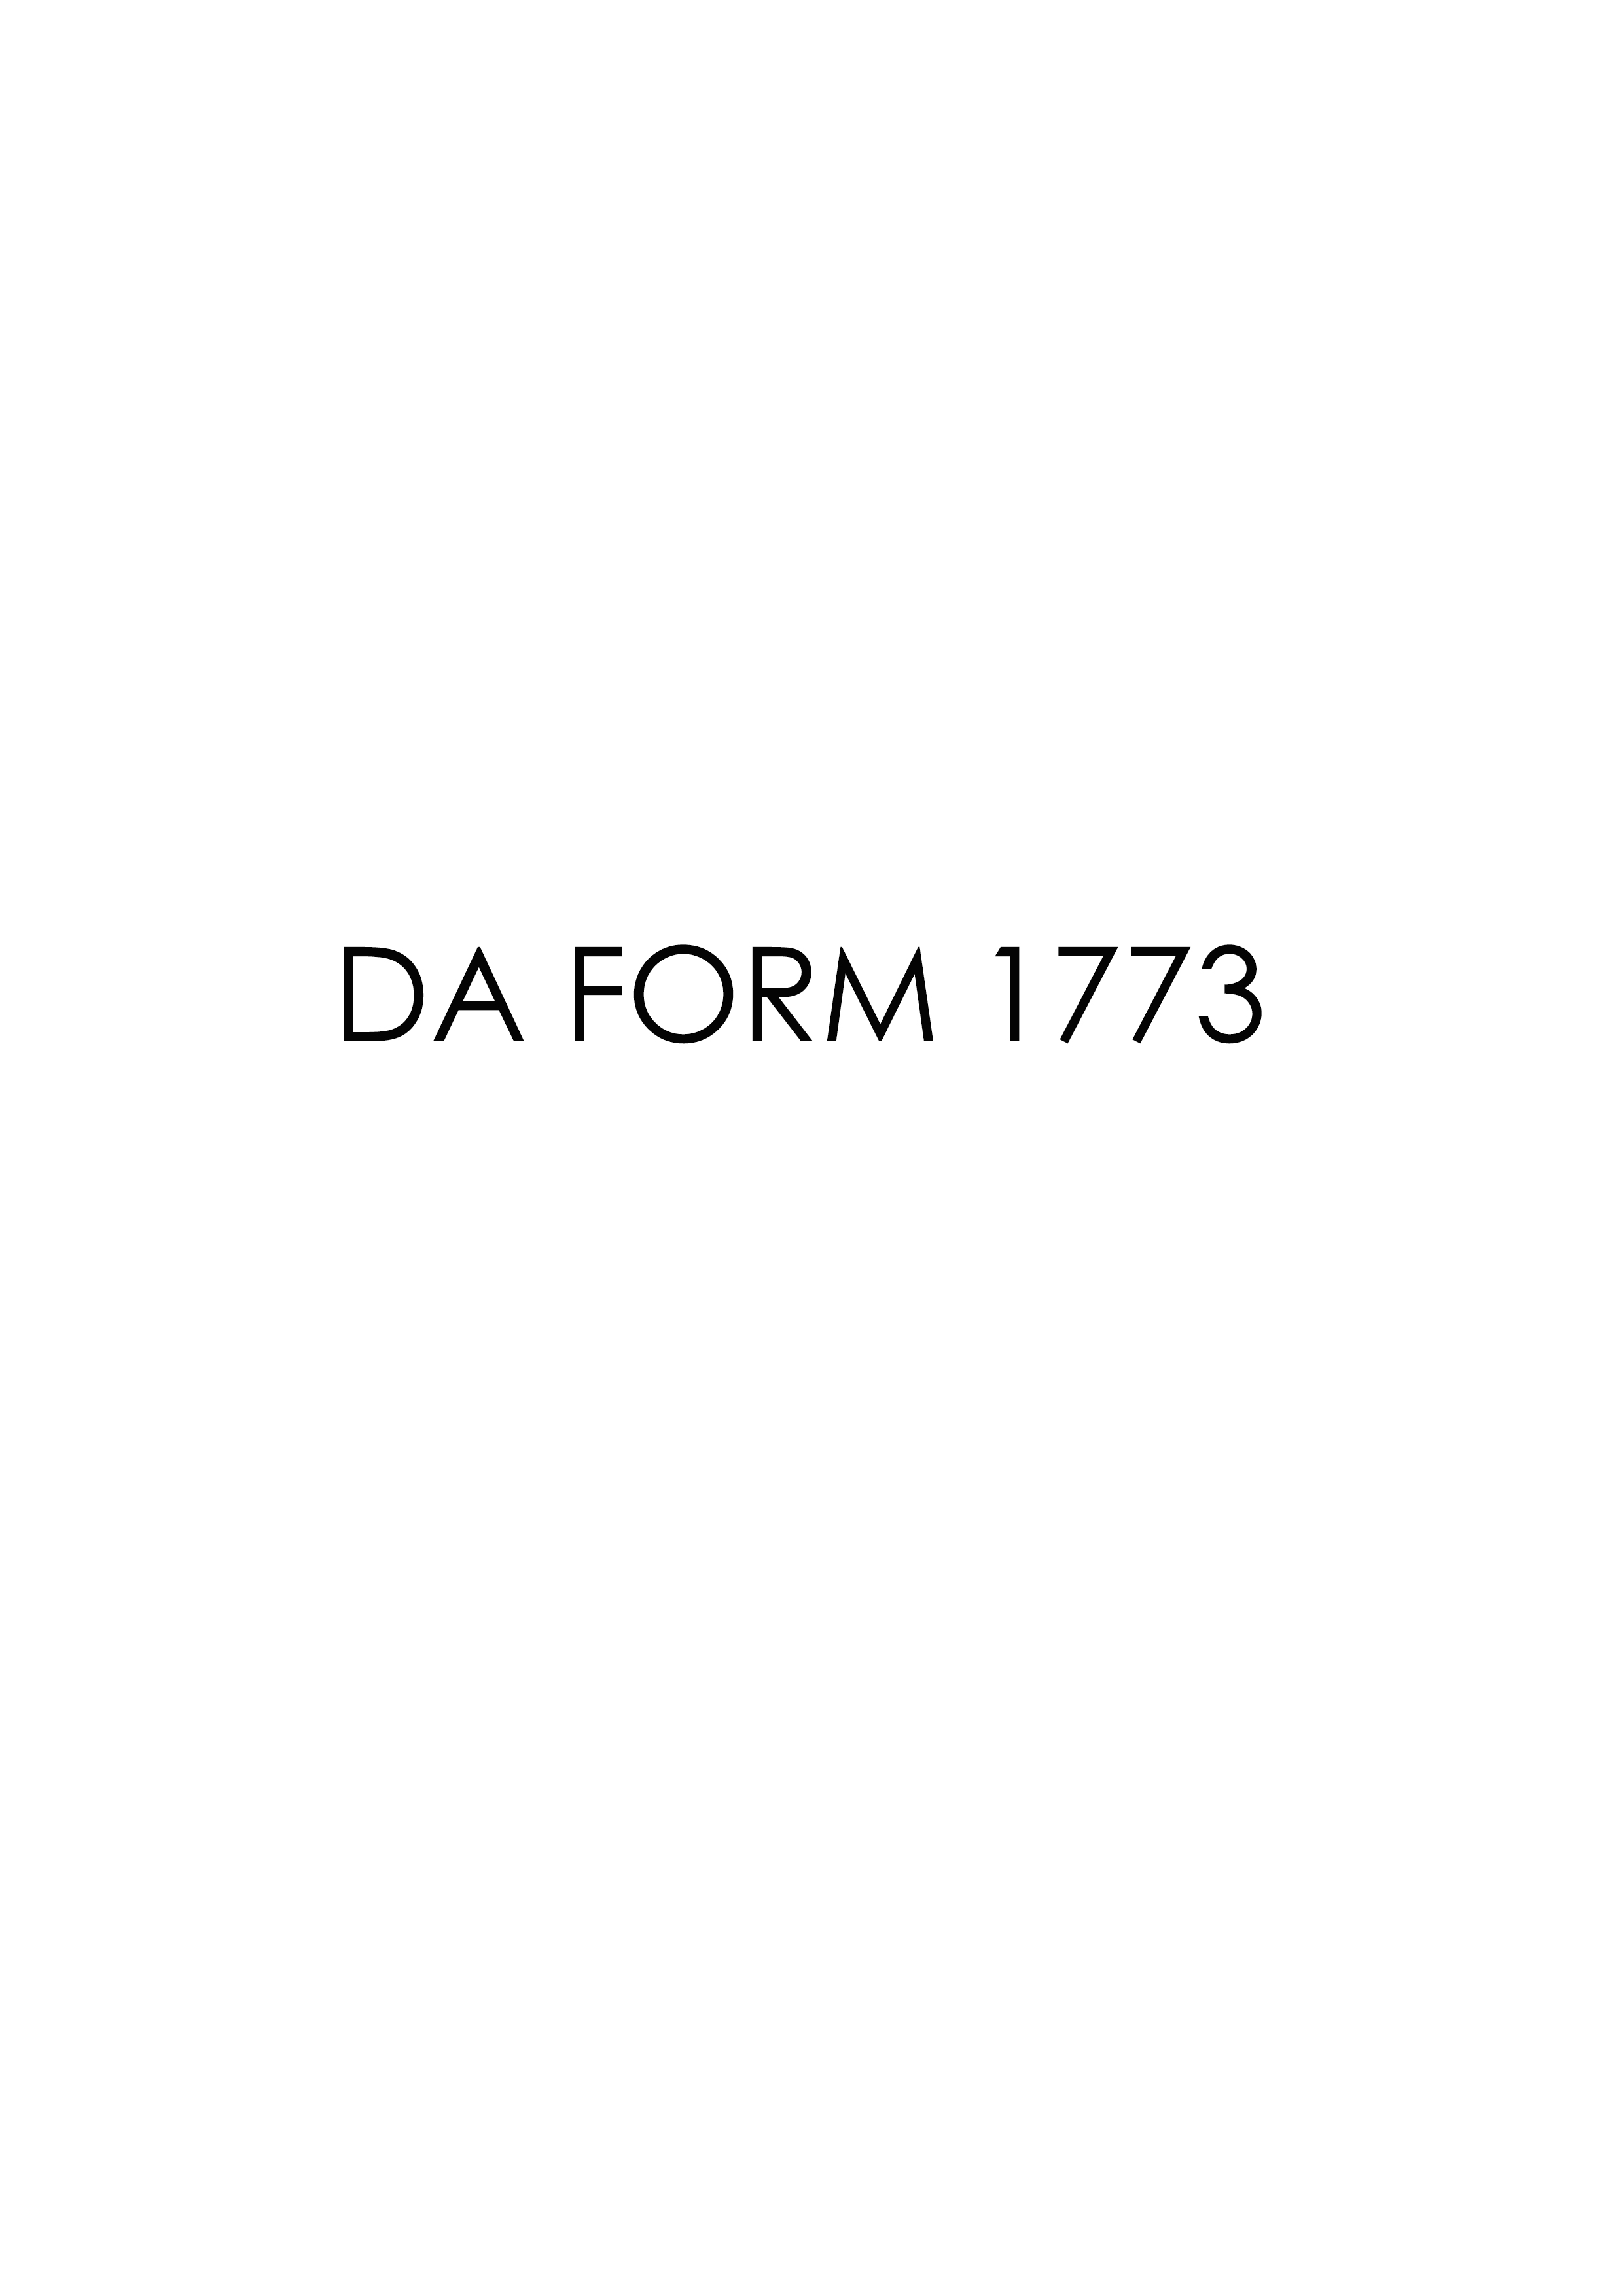 Download da 1773